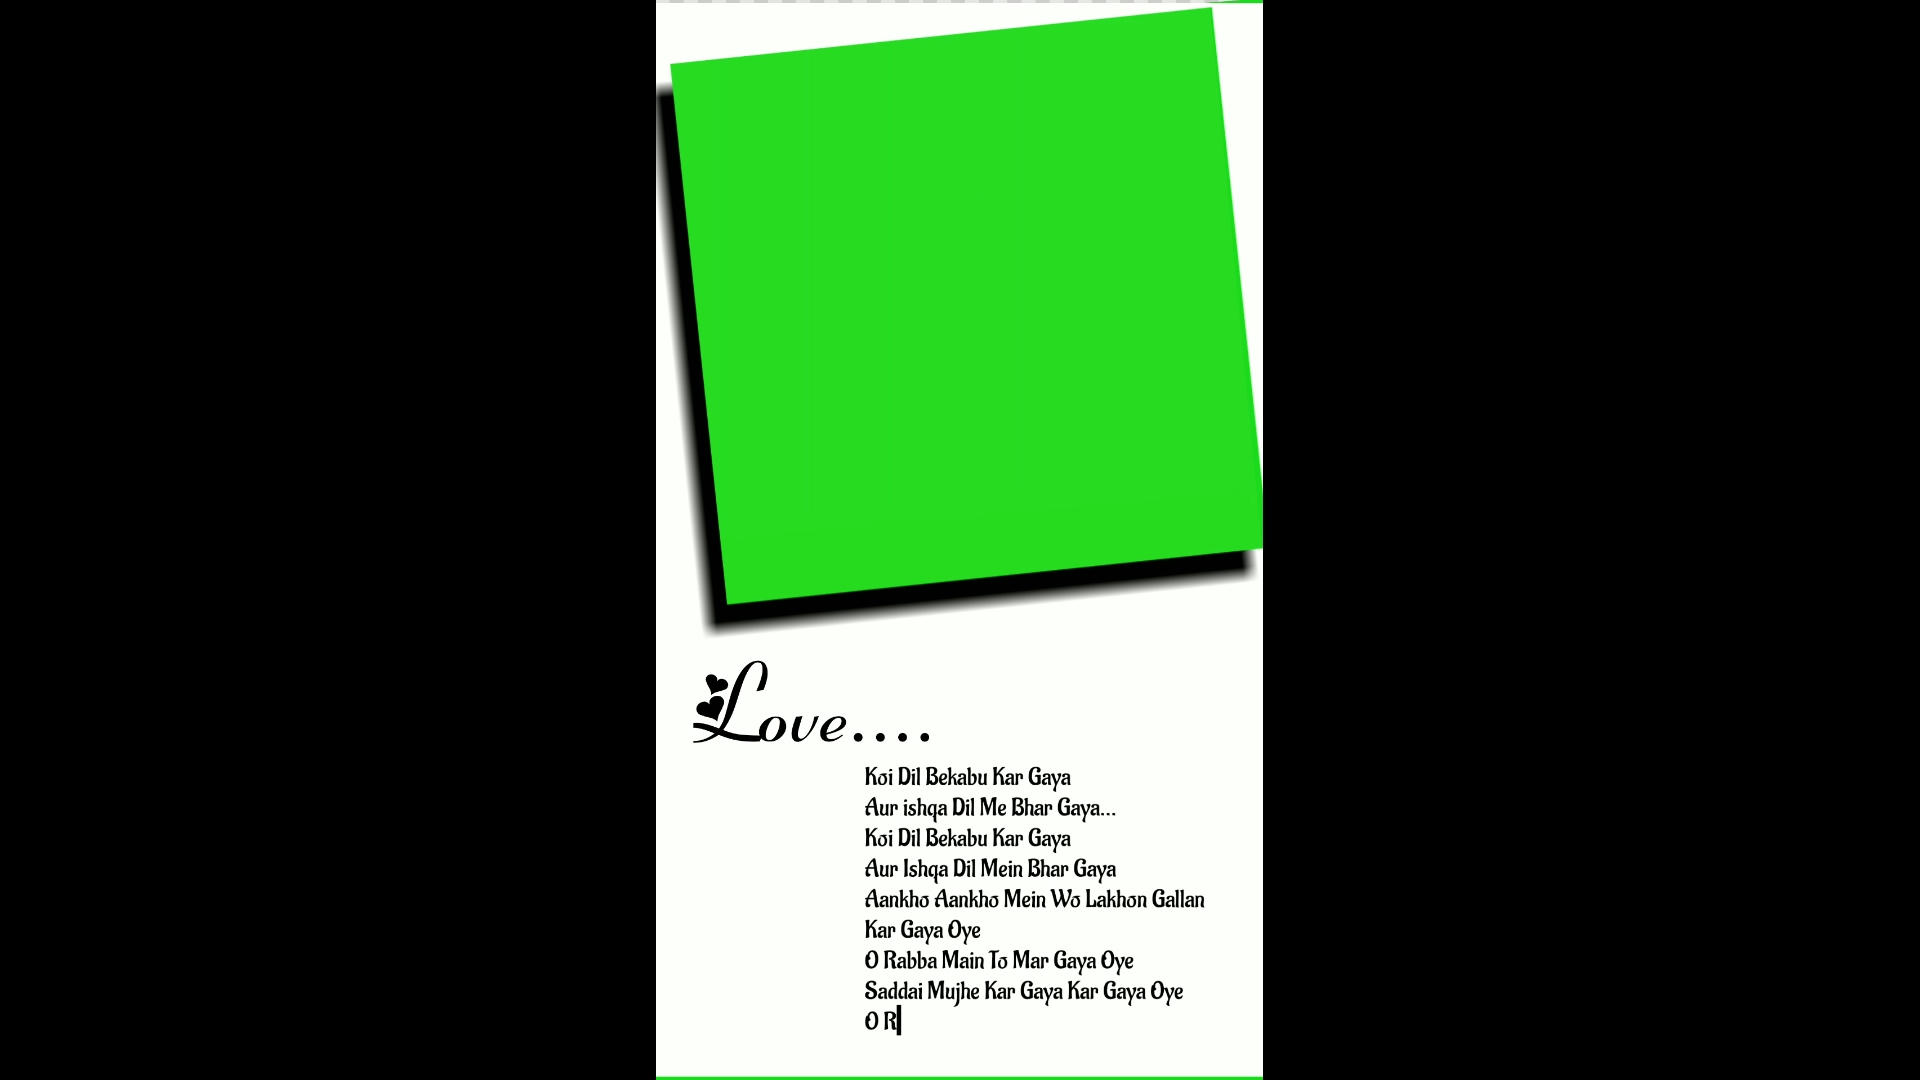 Love green screen video